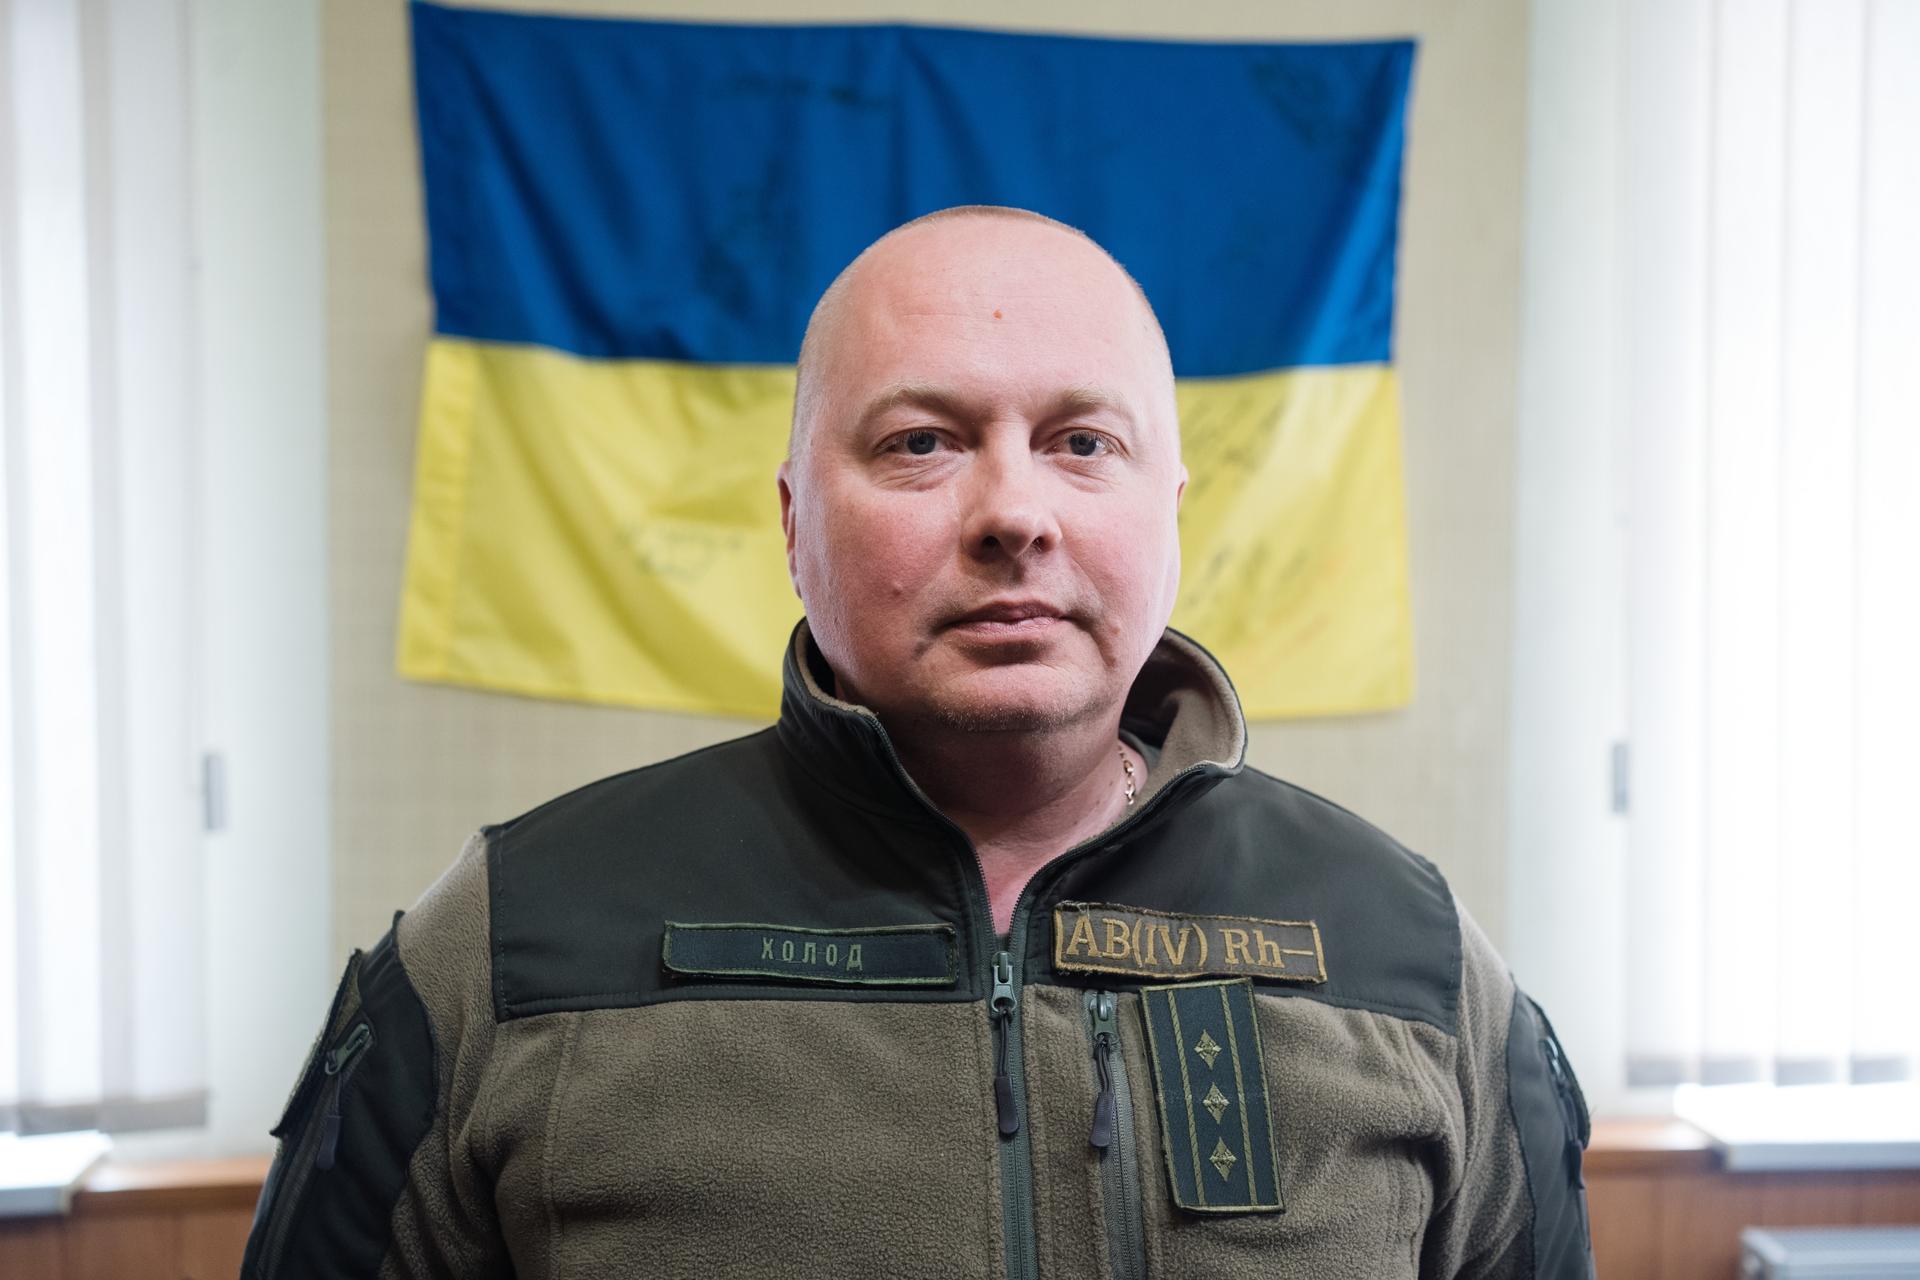 Dmitry Kholod is a deputy warden at Kharkiv Pre-trial Detention Center Number 27.